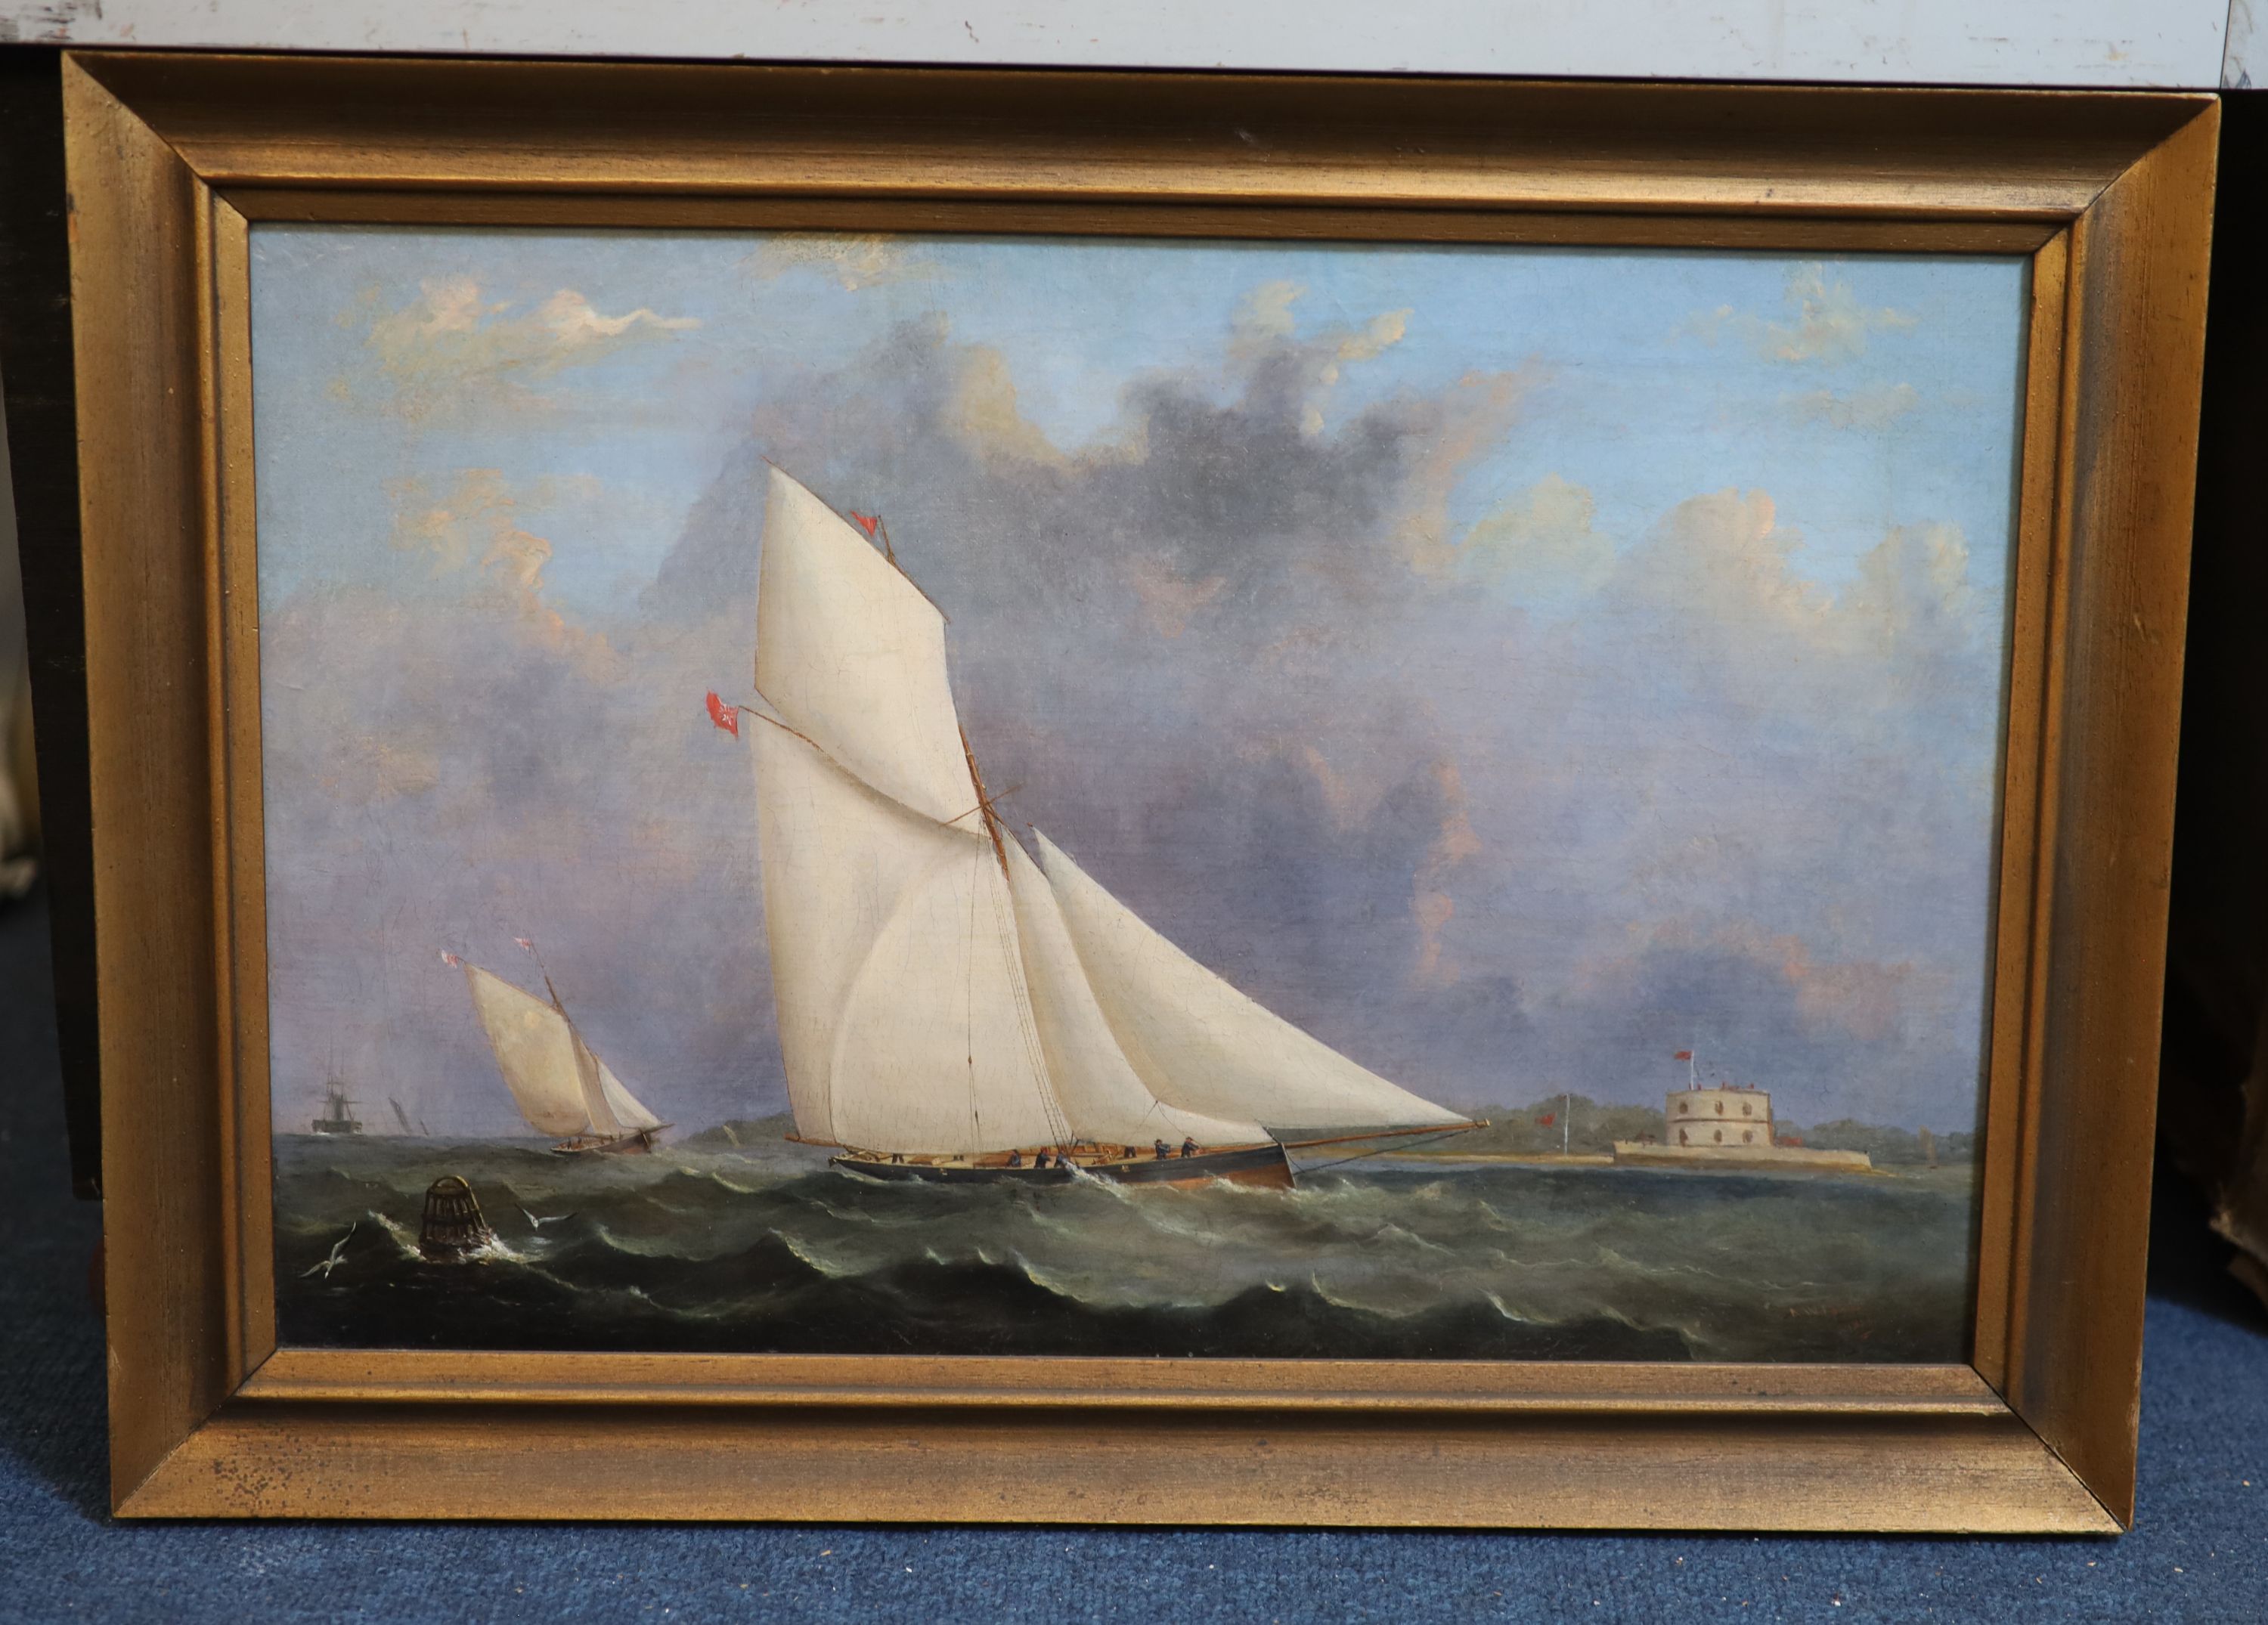 Arthur Wellington Fowles (1815-1883), The Yacht ‘Iris’, Oil on canvas laid on board, 29 x 44 cm.